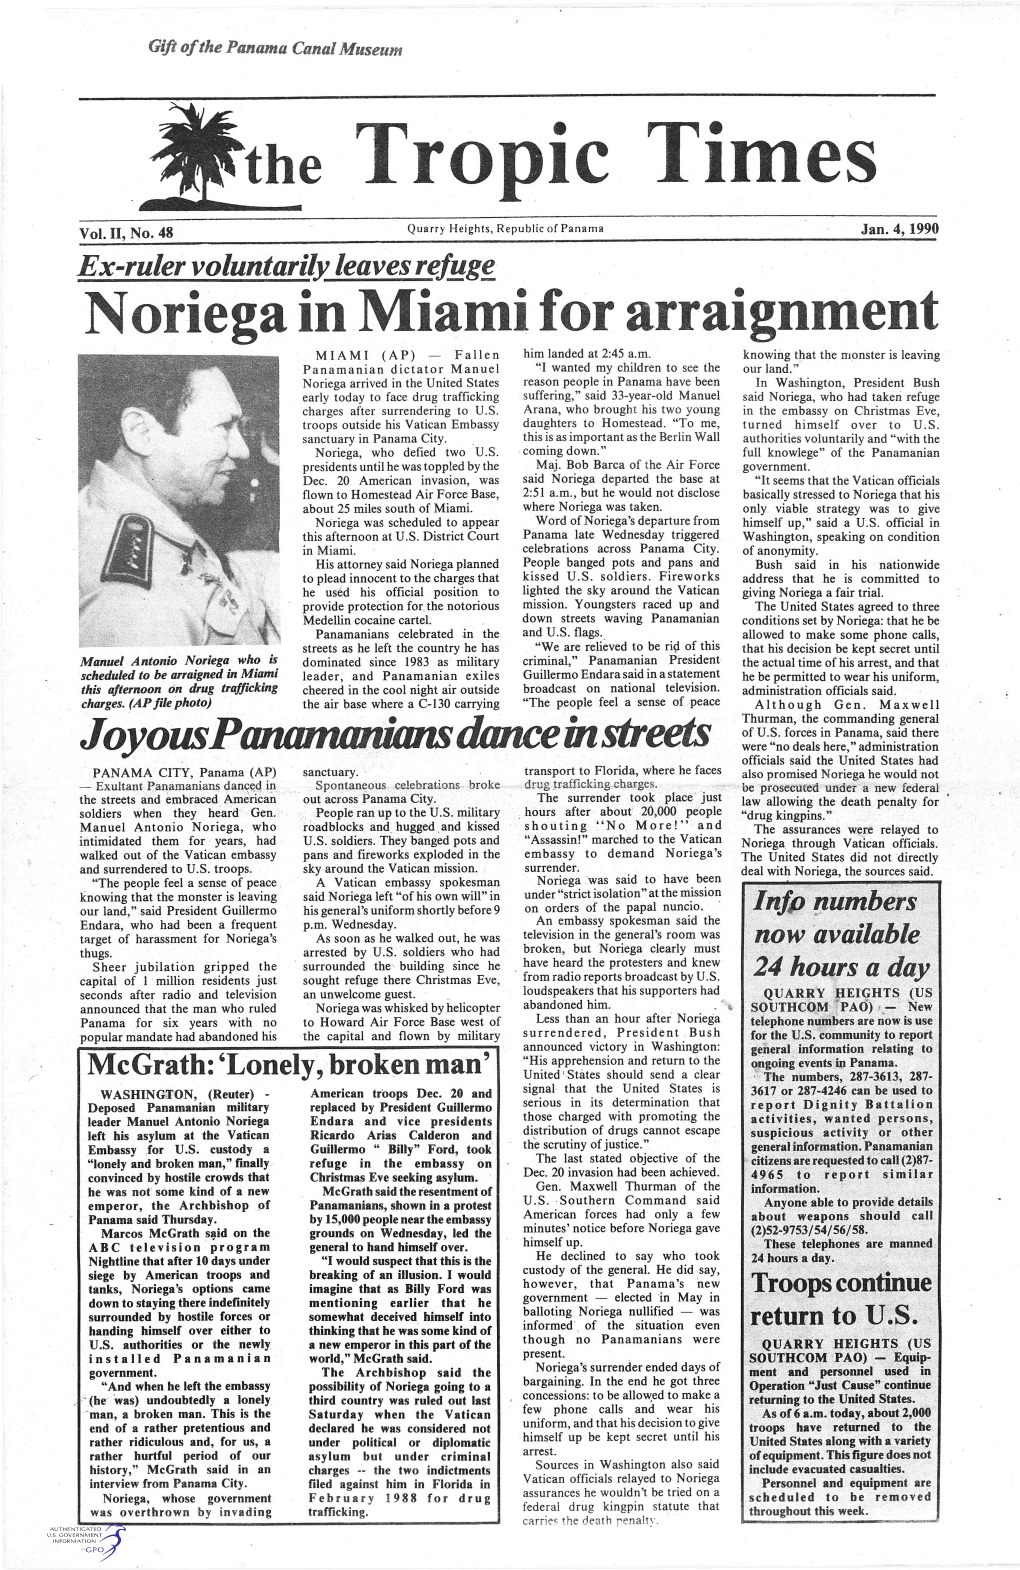 Noriega in Miami for Arraignment MIAMI (A P) - Fallen Him Landed at 2:45 A.M